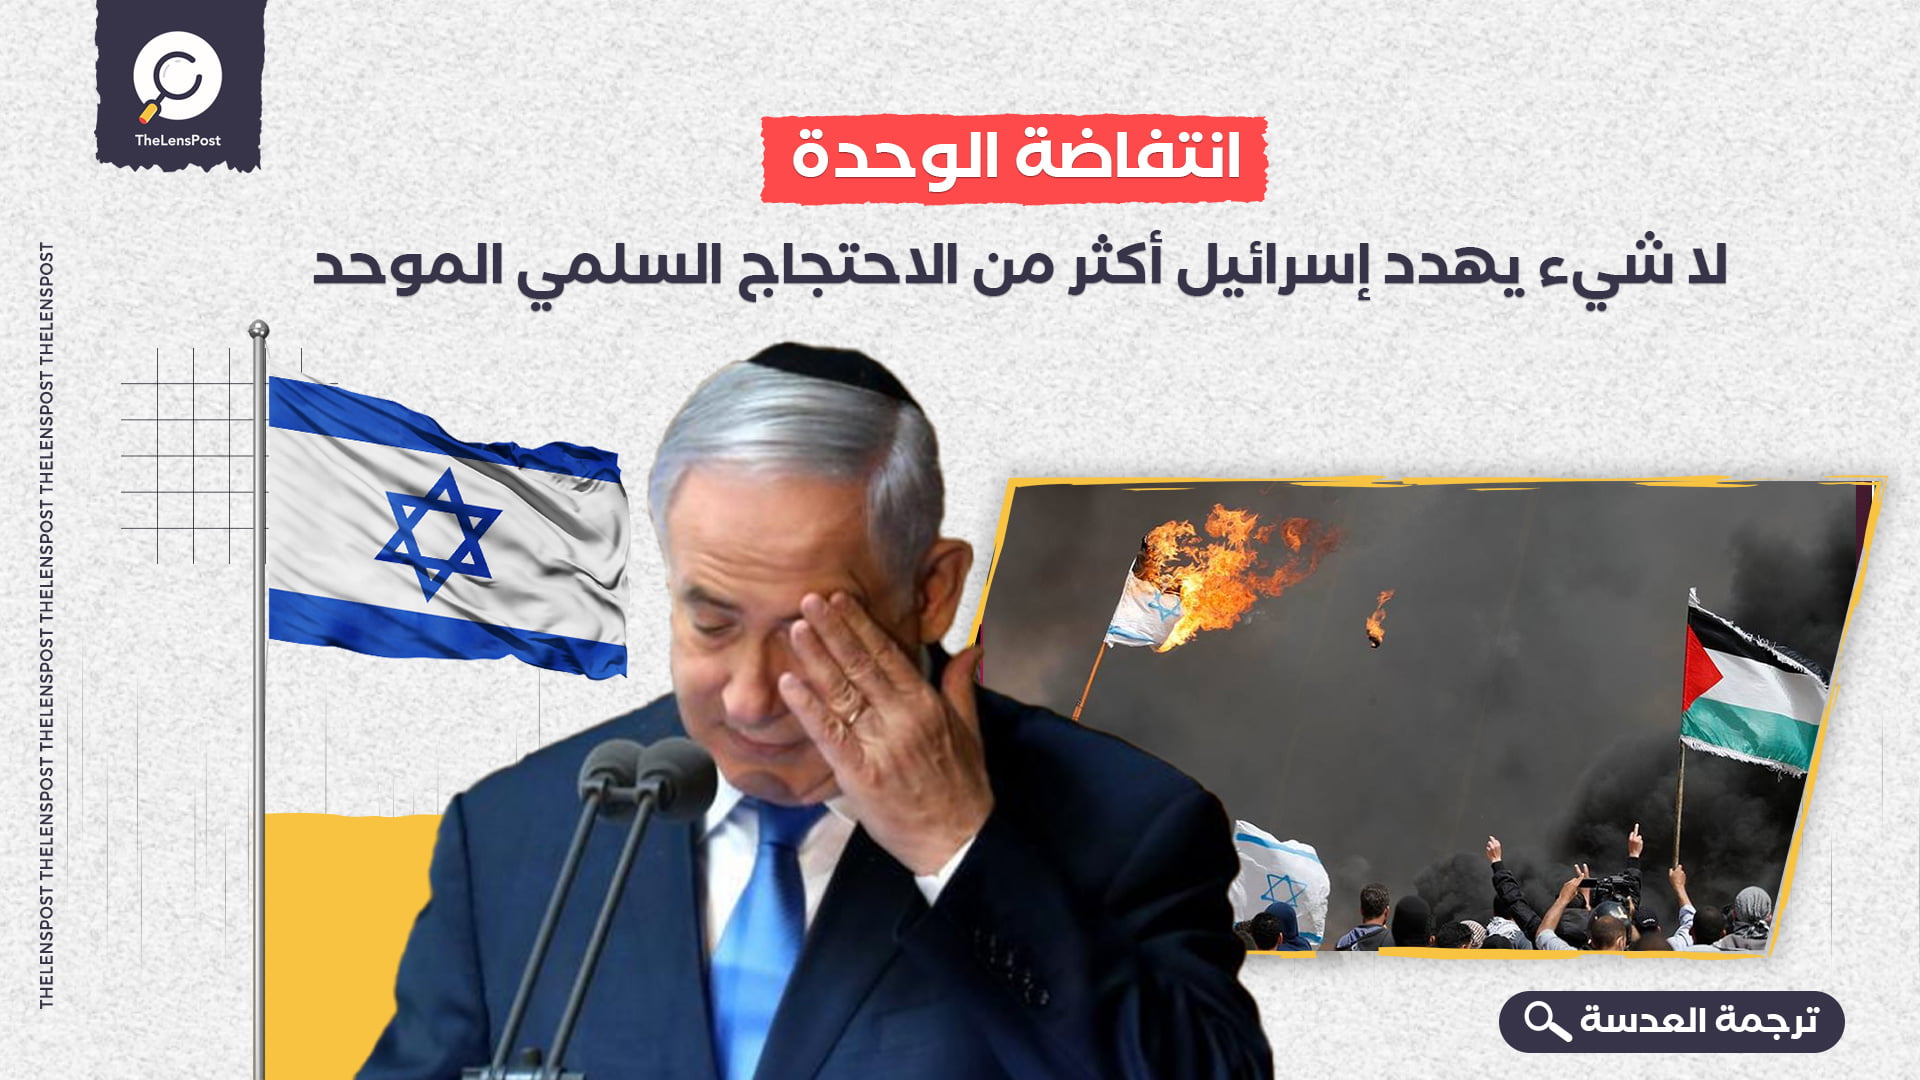 انتفاضة الوحدة: لا شيء يهدد إسرائيل أكثر من الاحتجاج السلمي الموحد